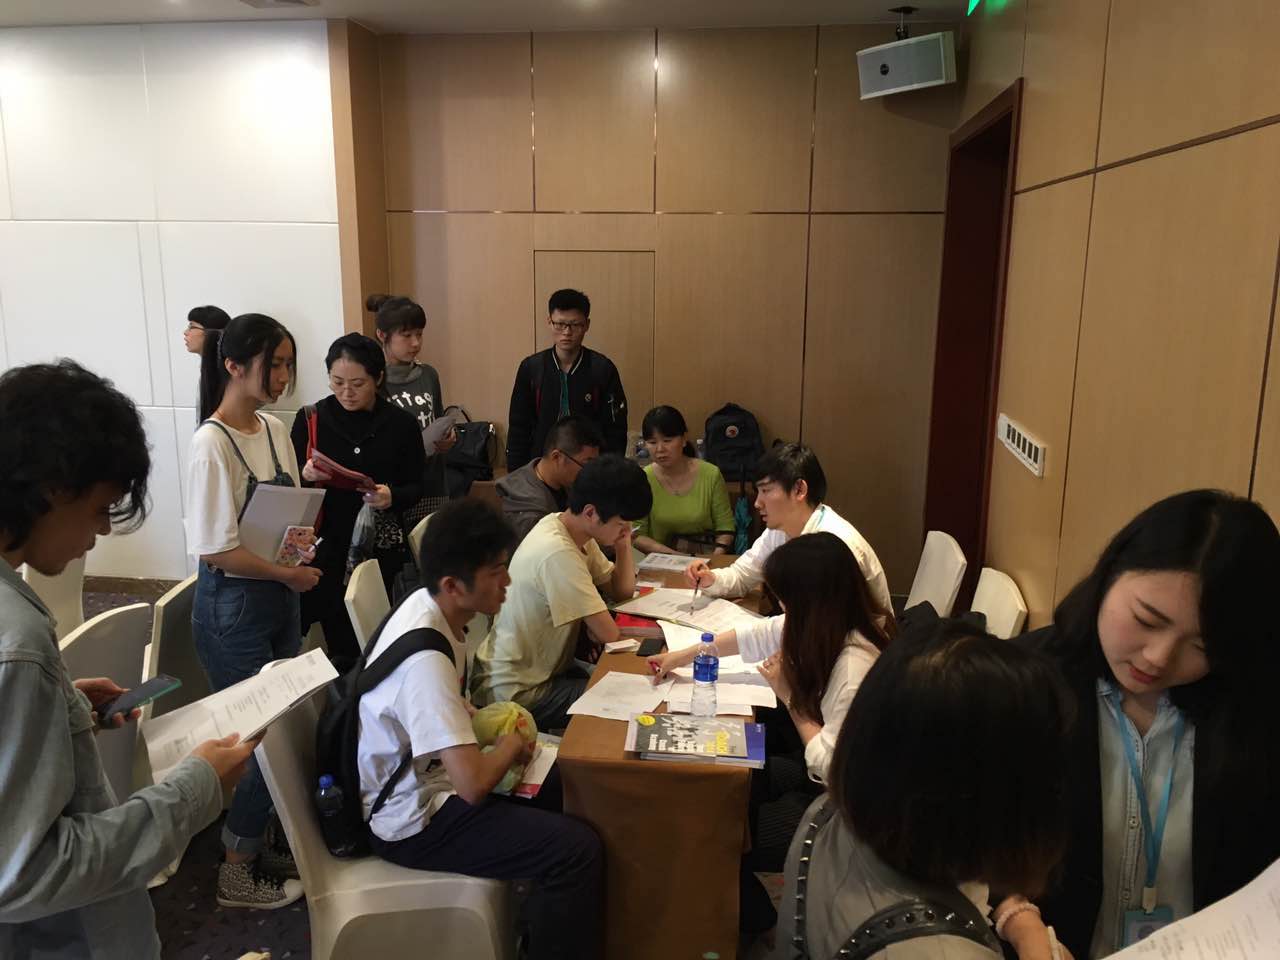 上海日本留学およびスーパーグローバル30プログラム講演会